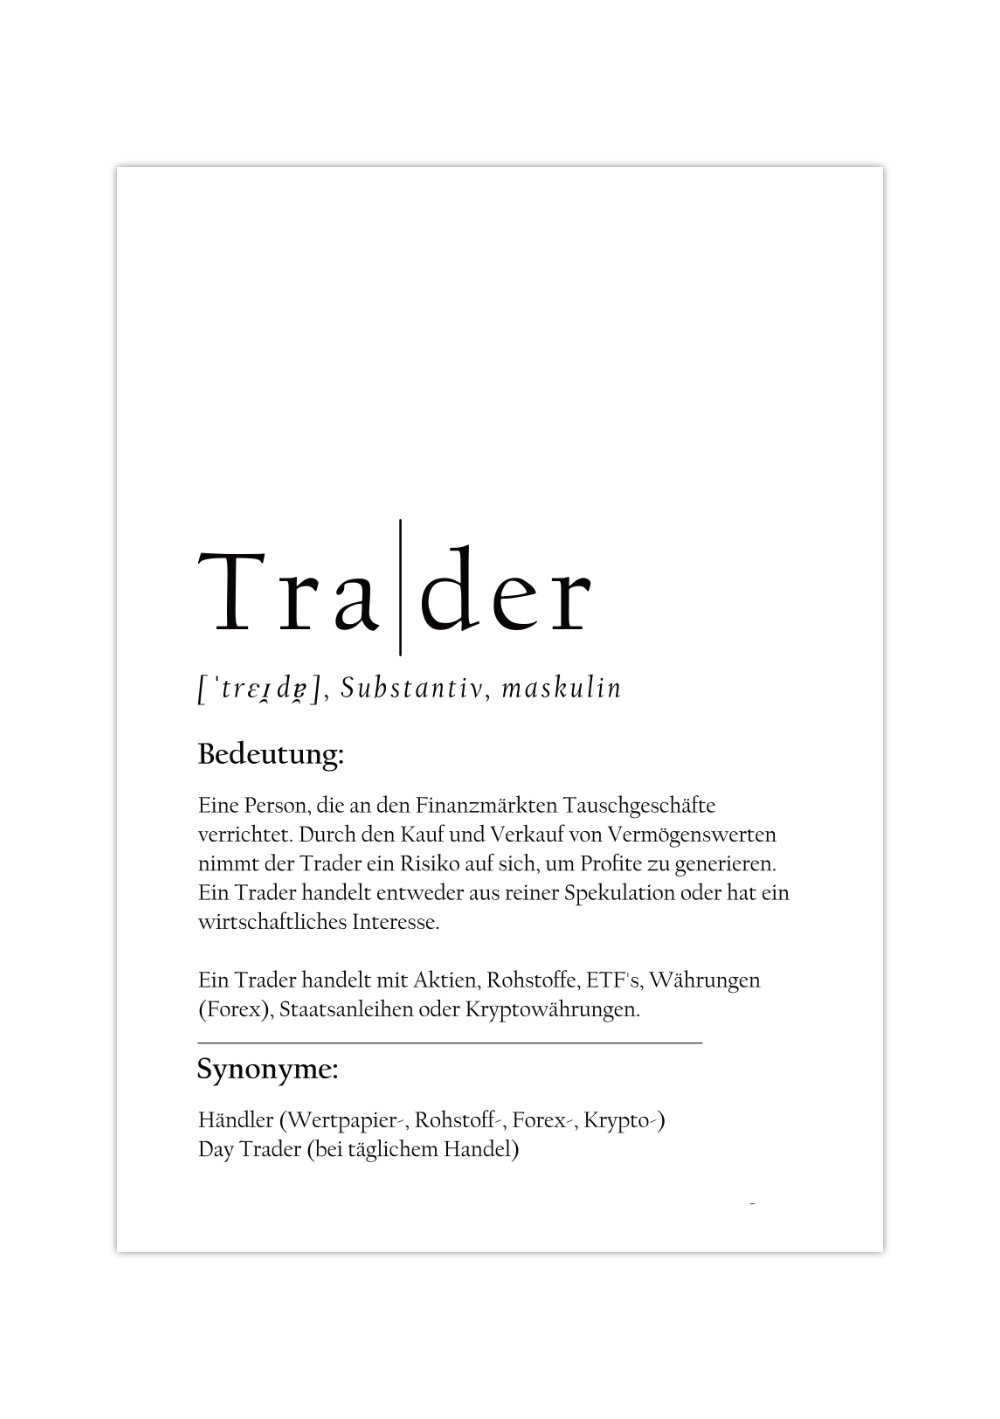 Dieses Aktienposter mit der Definition des Wortes Trader ist das ideale Geschenk für Aktionäre, Trader, Banker, Krypto- und Wertpapierhändler.